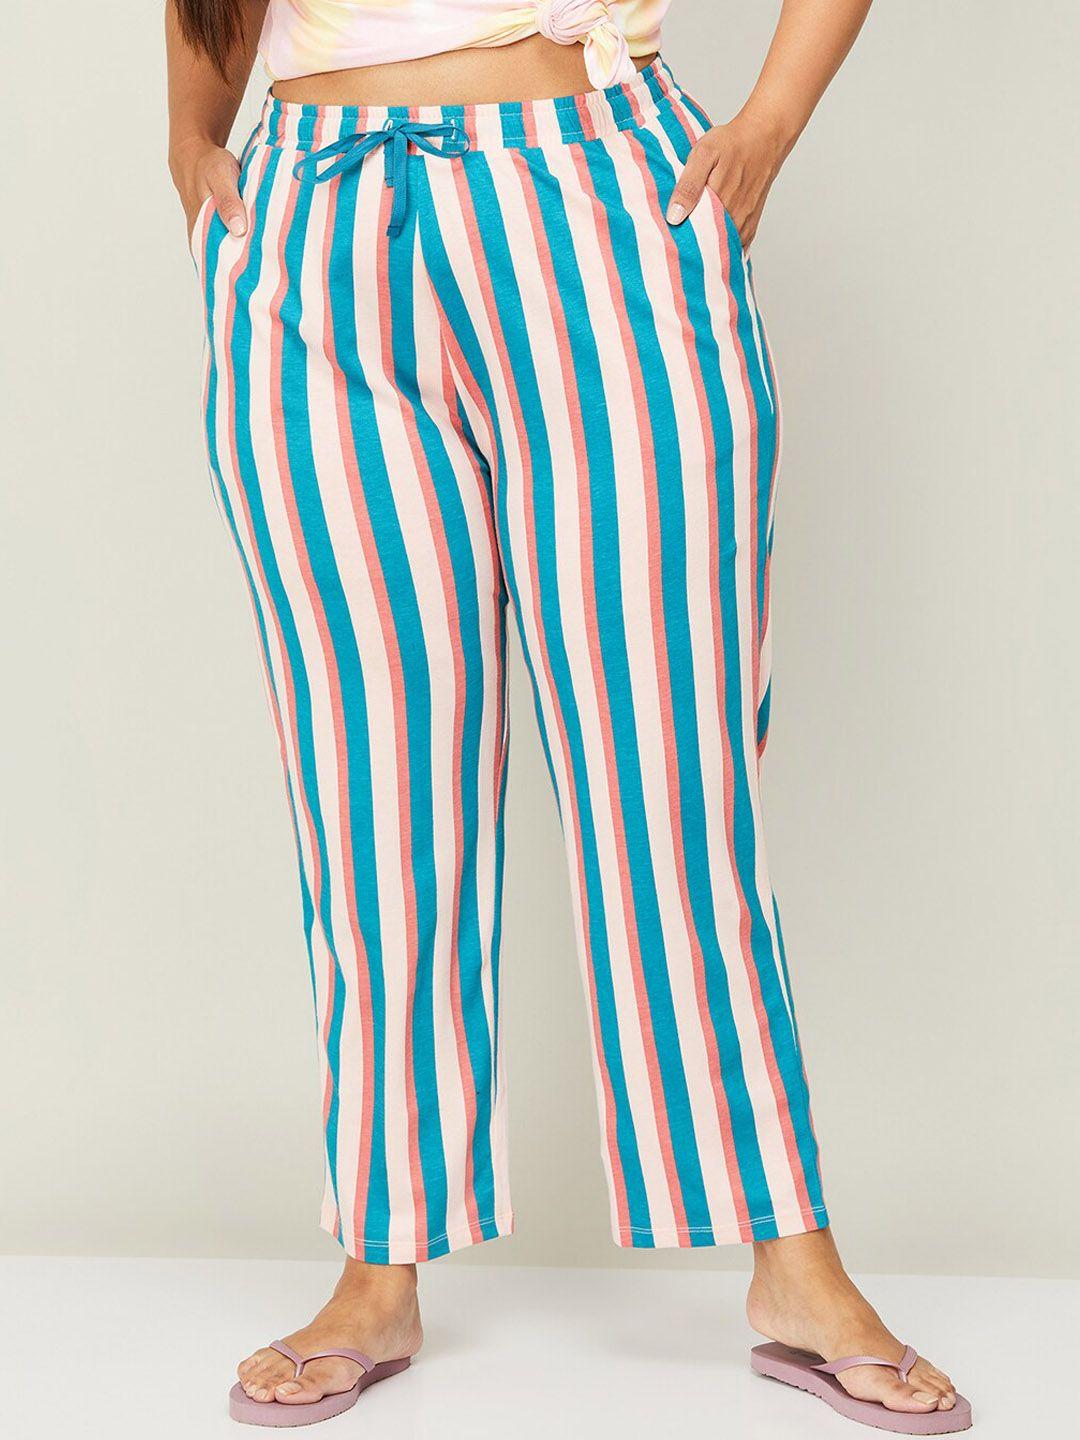 nexus women plus size striped cotton lounge pants